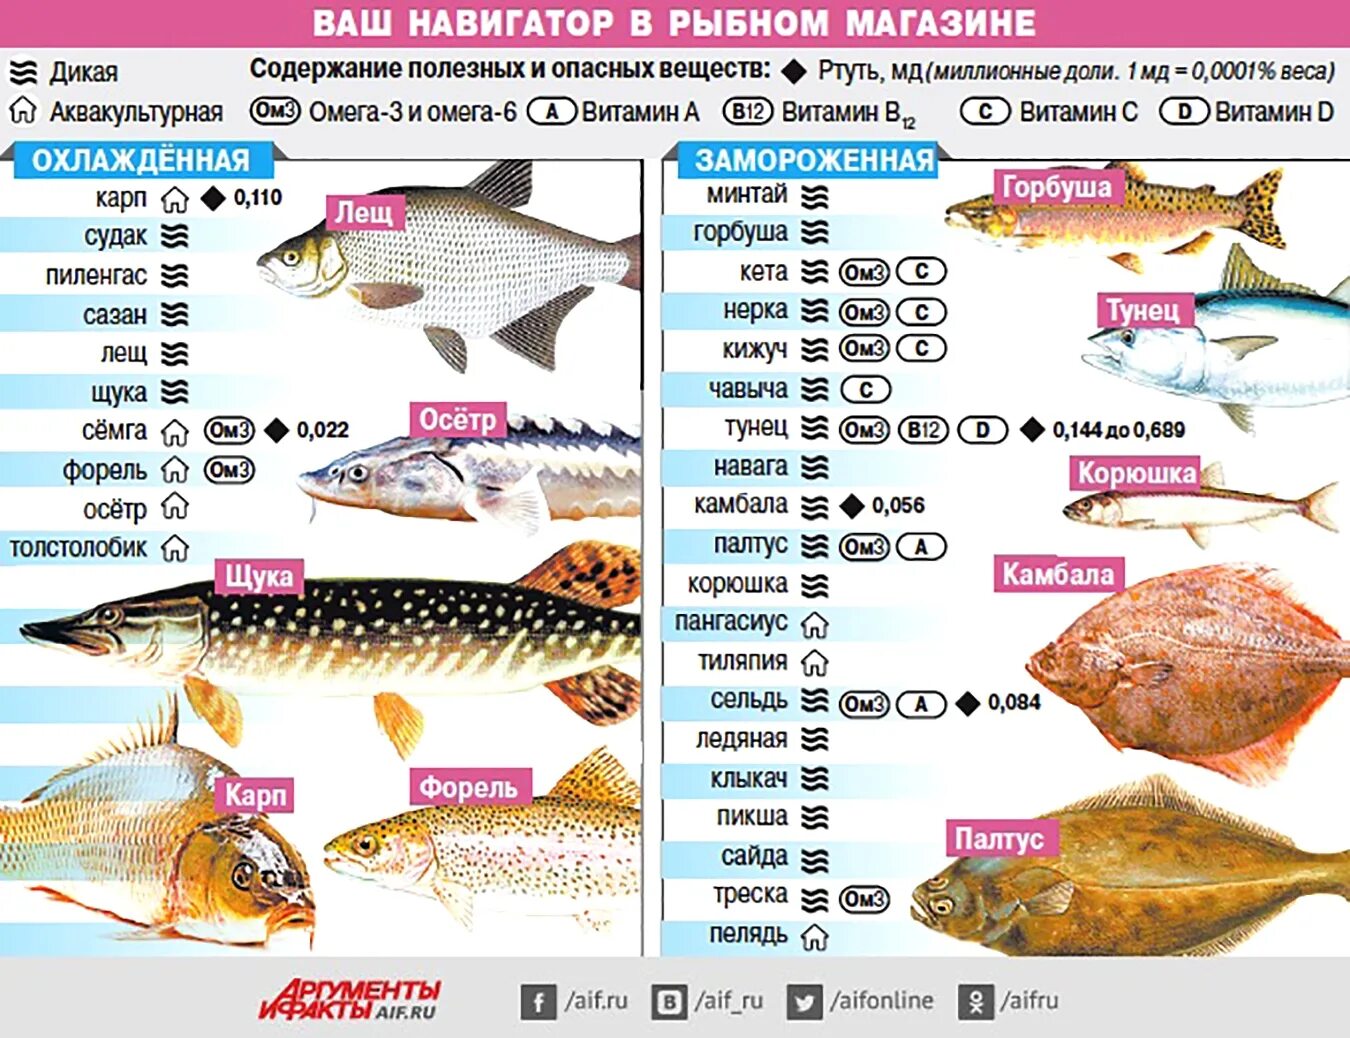 Сколько варить щуку. Самые популярные сорта рыбы. Самые полезные сорта рыбы. Содержание витаминов в рыбе. Таблица полезной рыбы.